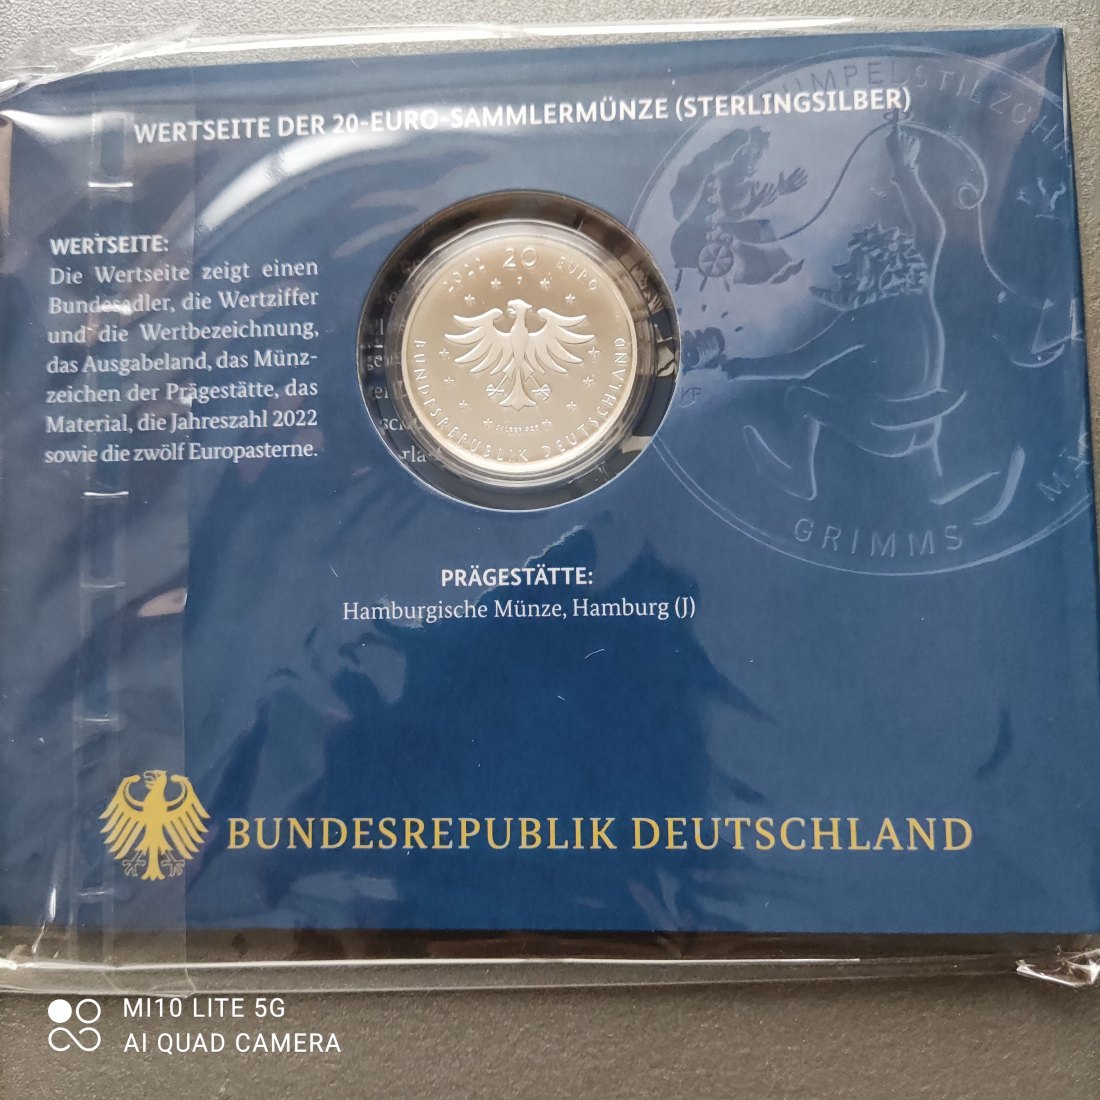  Deutschland 20 Euro Silber 2022 Rumpelstilzchen (Grimms Märchen) Proof PP spiegelglanz   